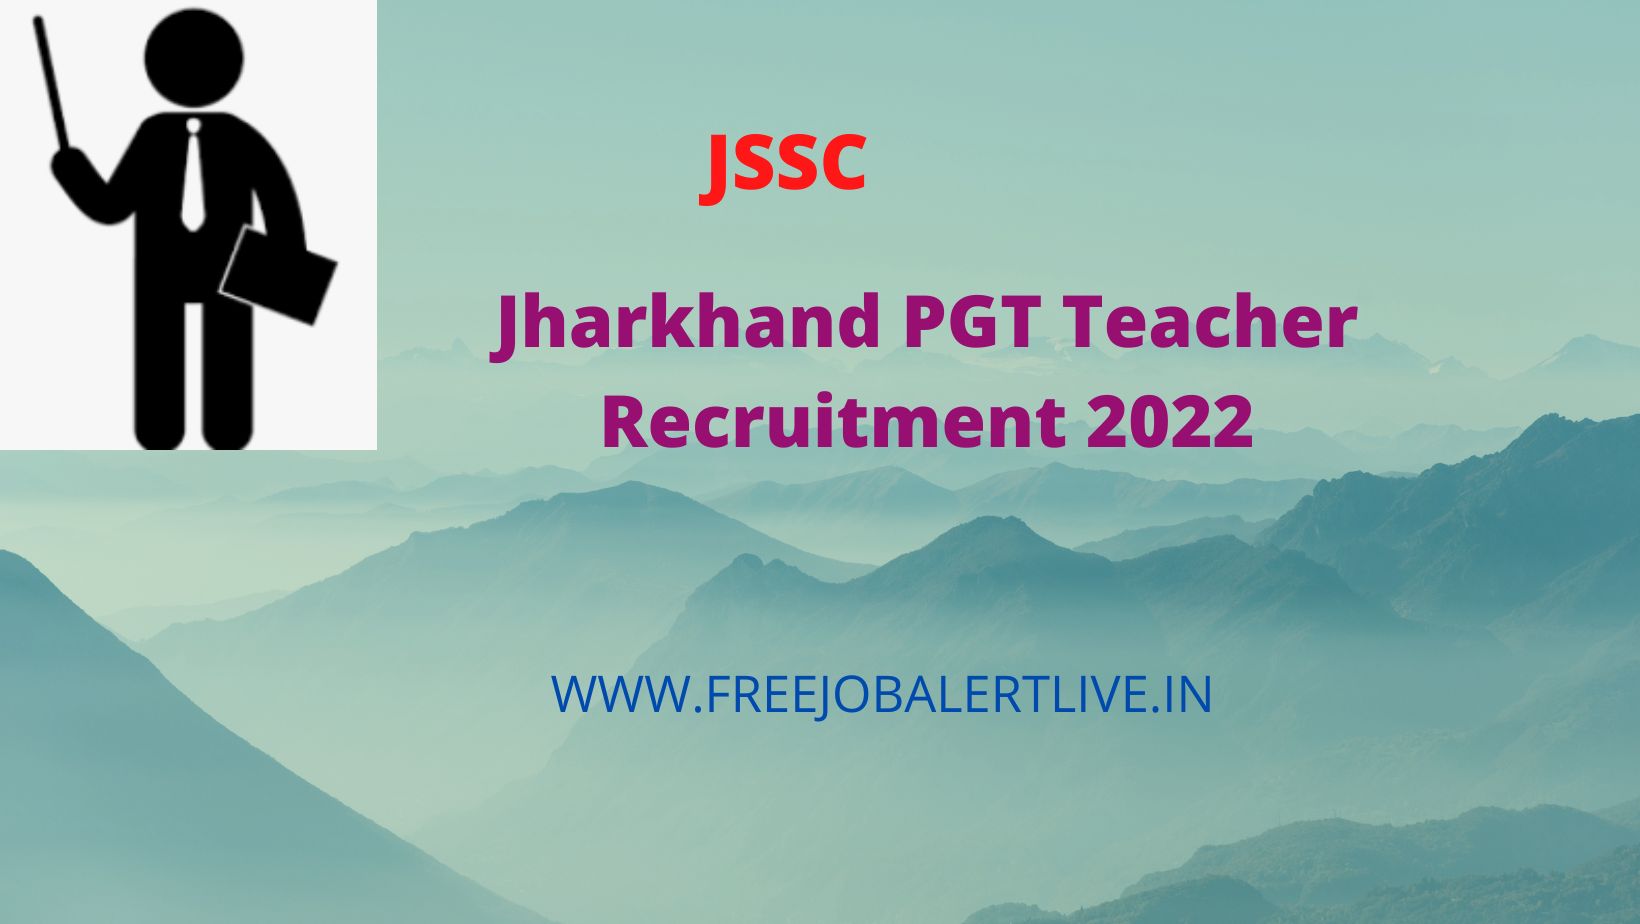 Jharkhand PGT Teacher Recruitment